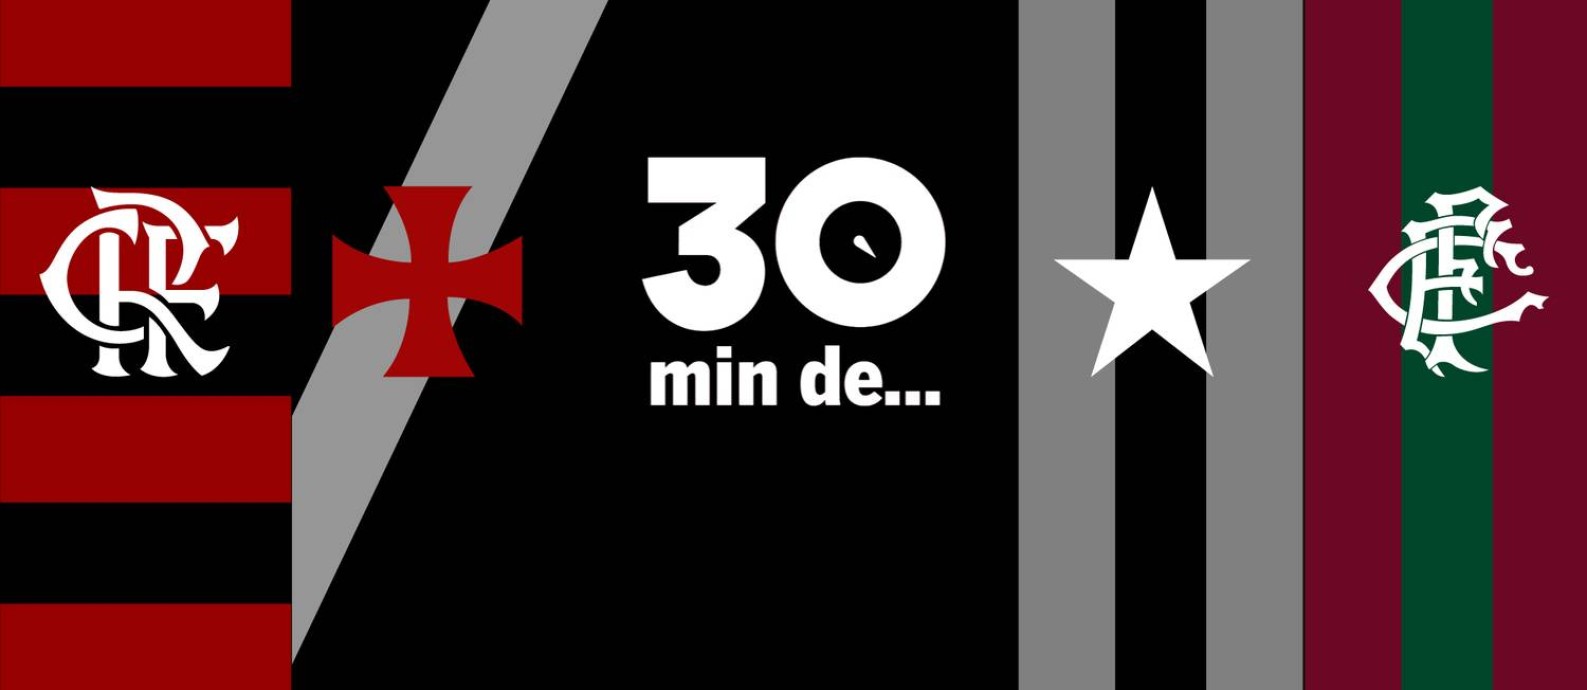 Flamengo entrando pelo CANO e quiz sobre o Botafogo. Isso é o Meia Hora  de Notícias! : r/futebol